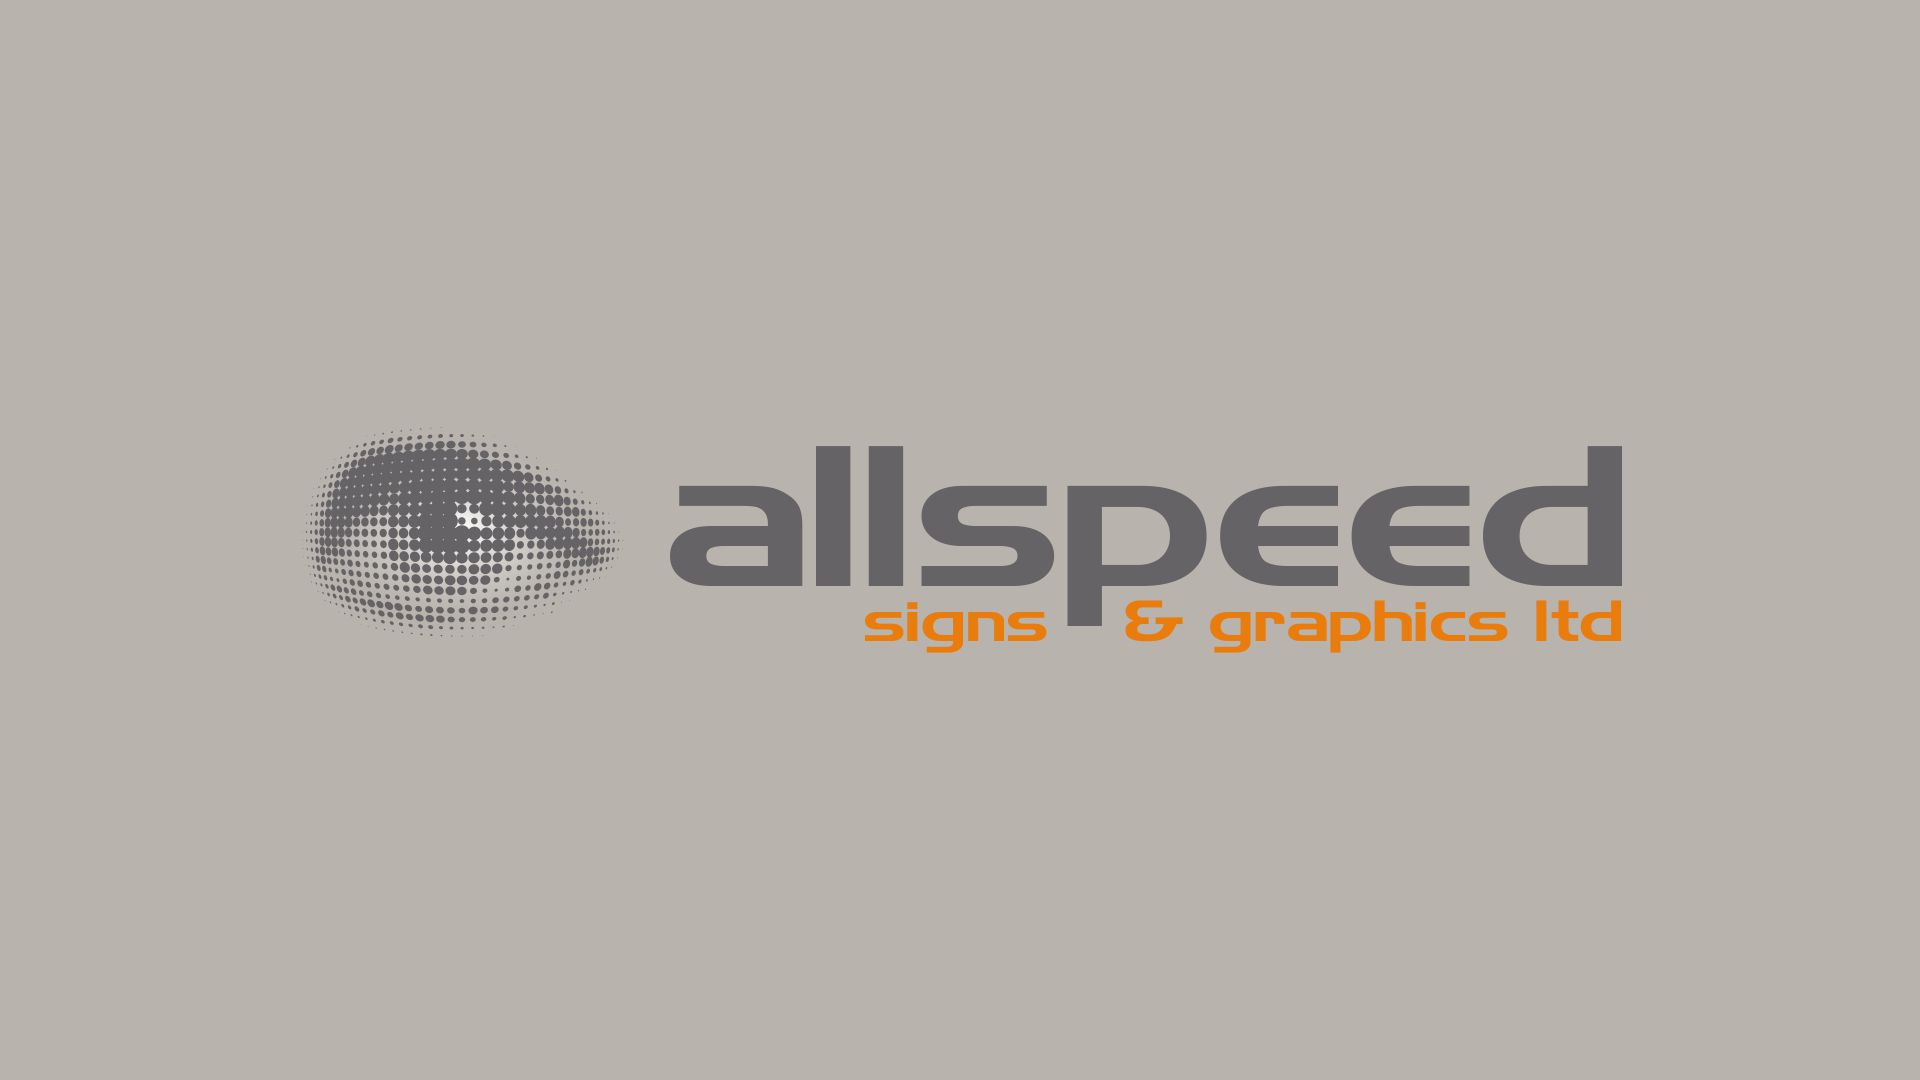 Allspeed Signs & Graphics Ltd